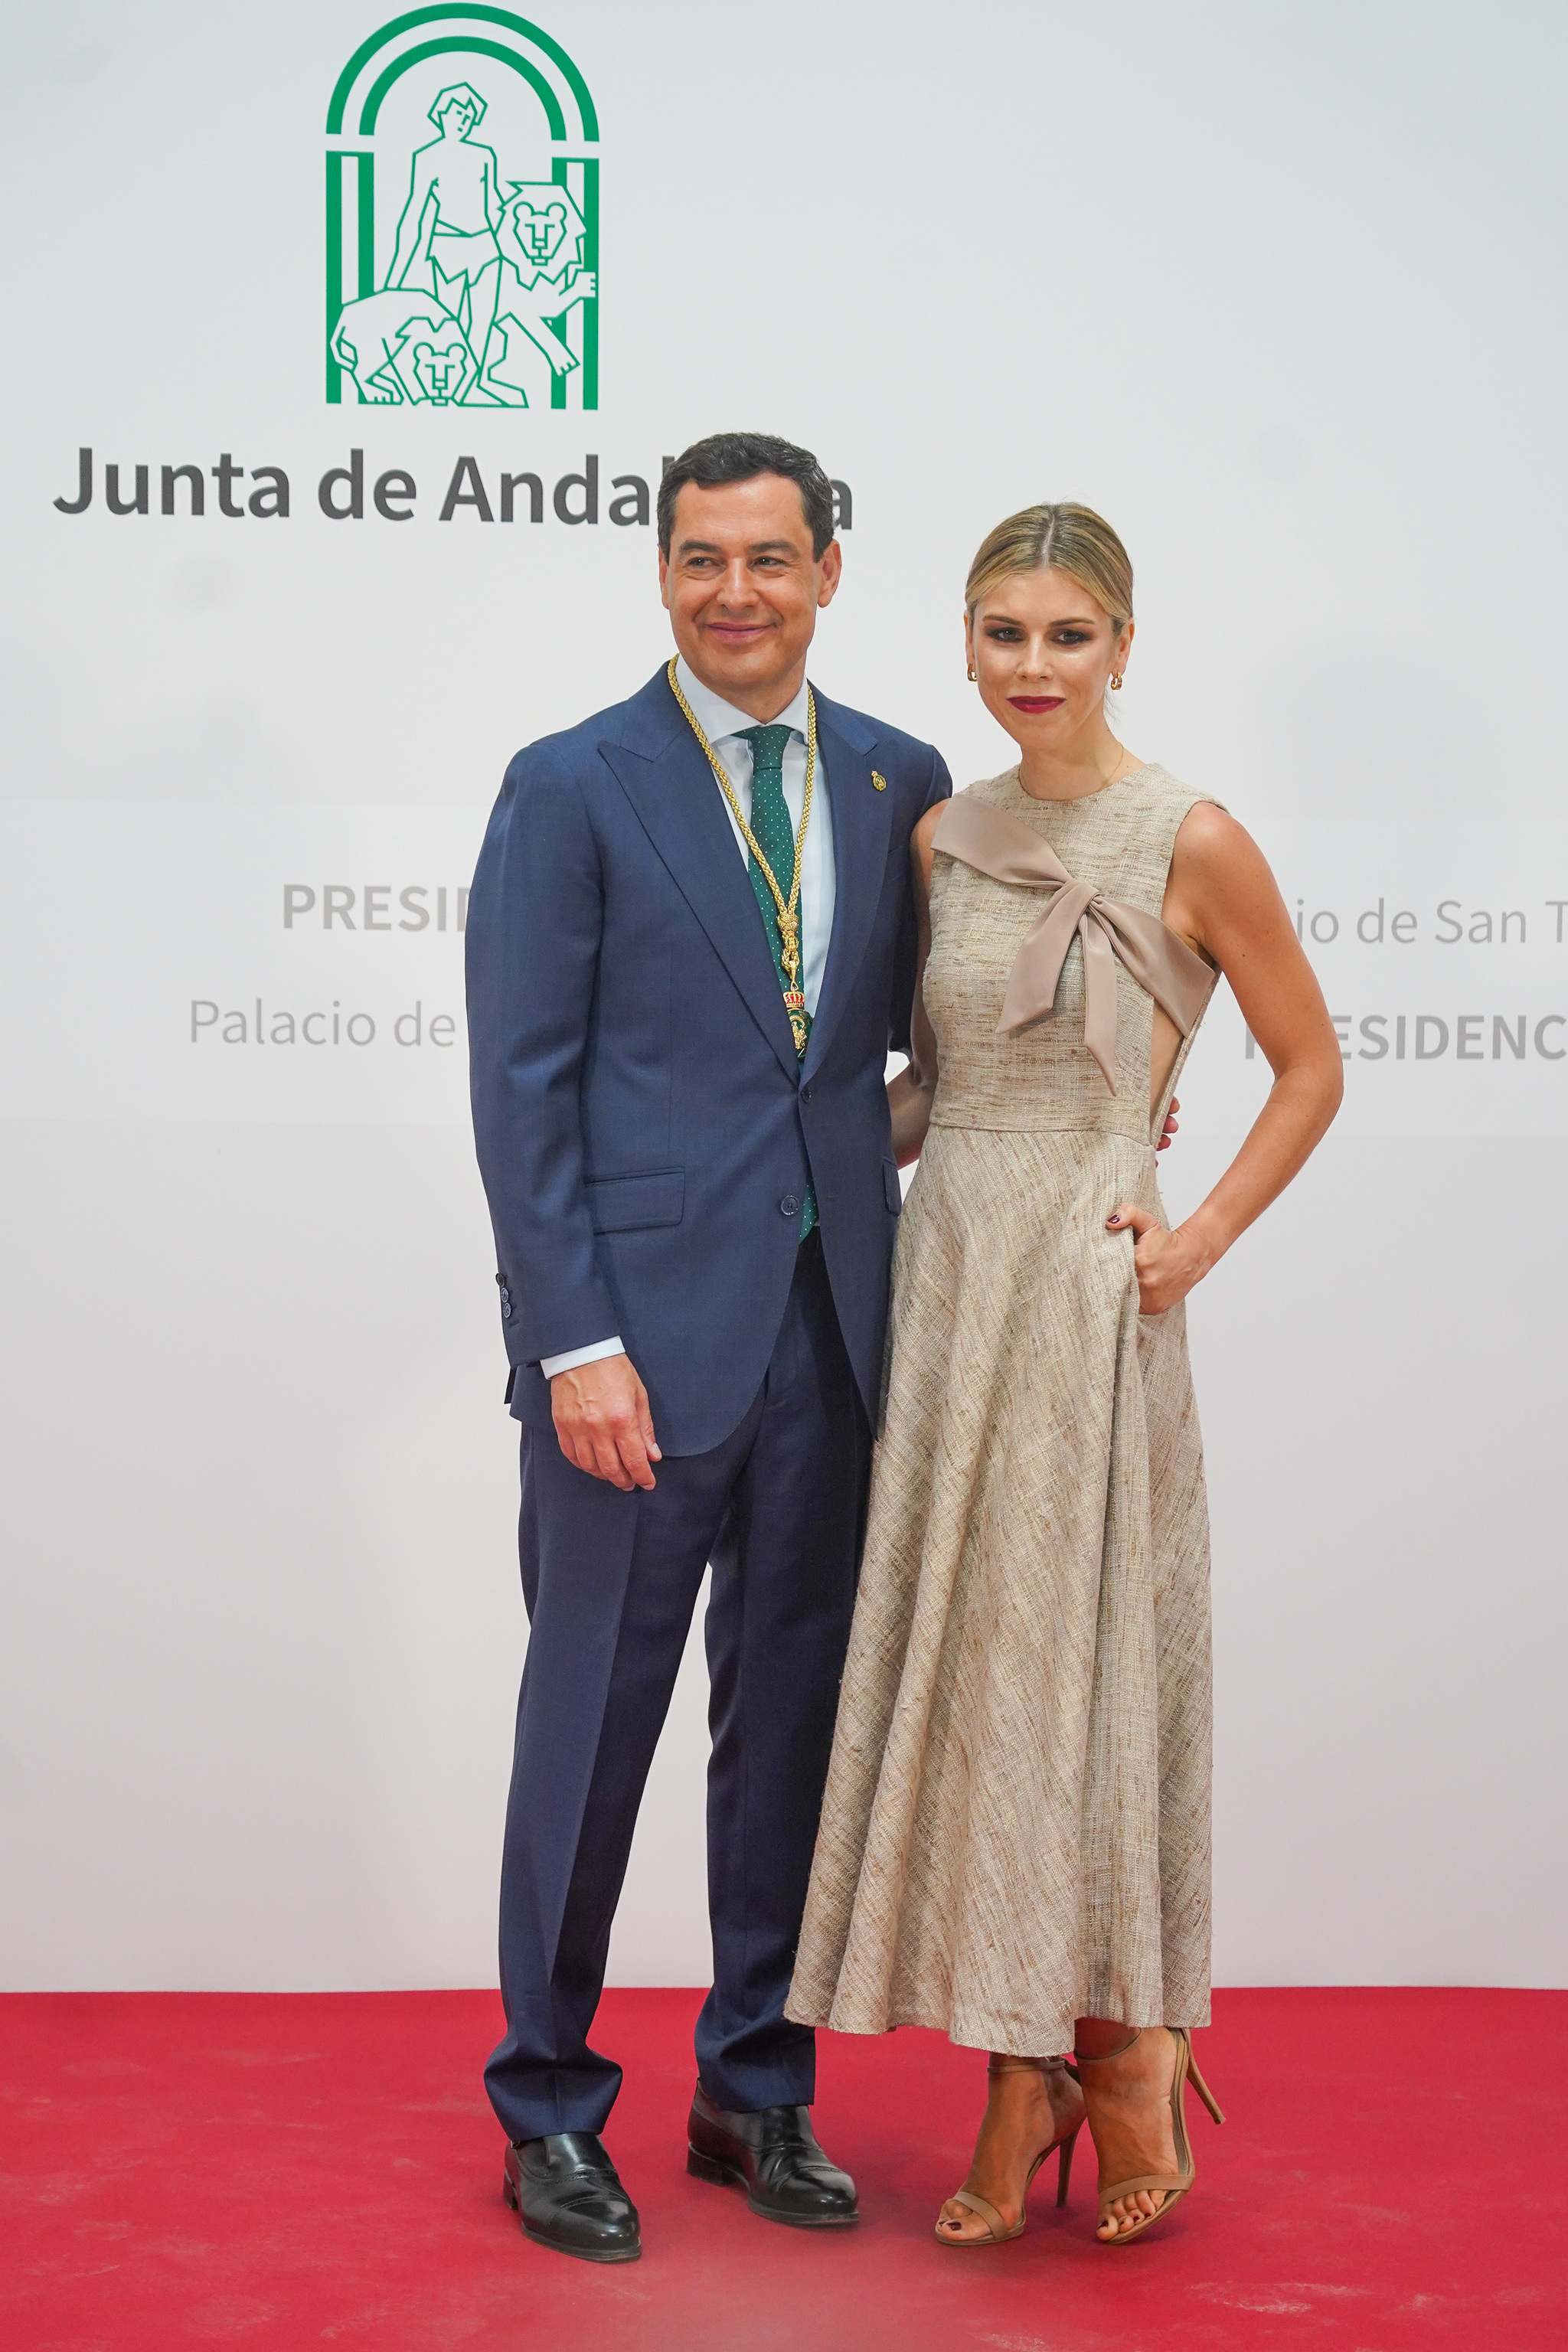 Manuela Villena y su marido Juanma Moreno el día de su toma de posesión en la Junta de Andalucía.